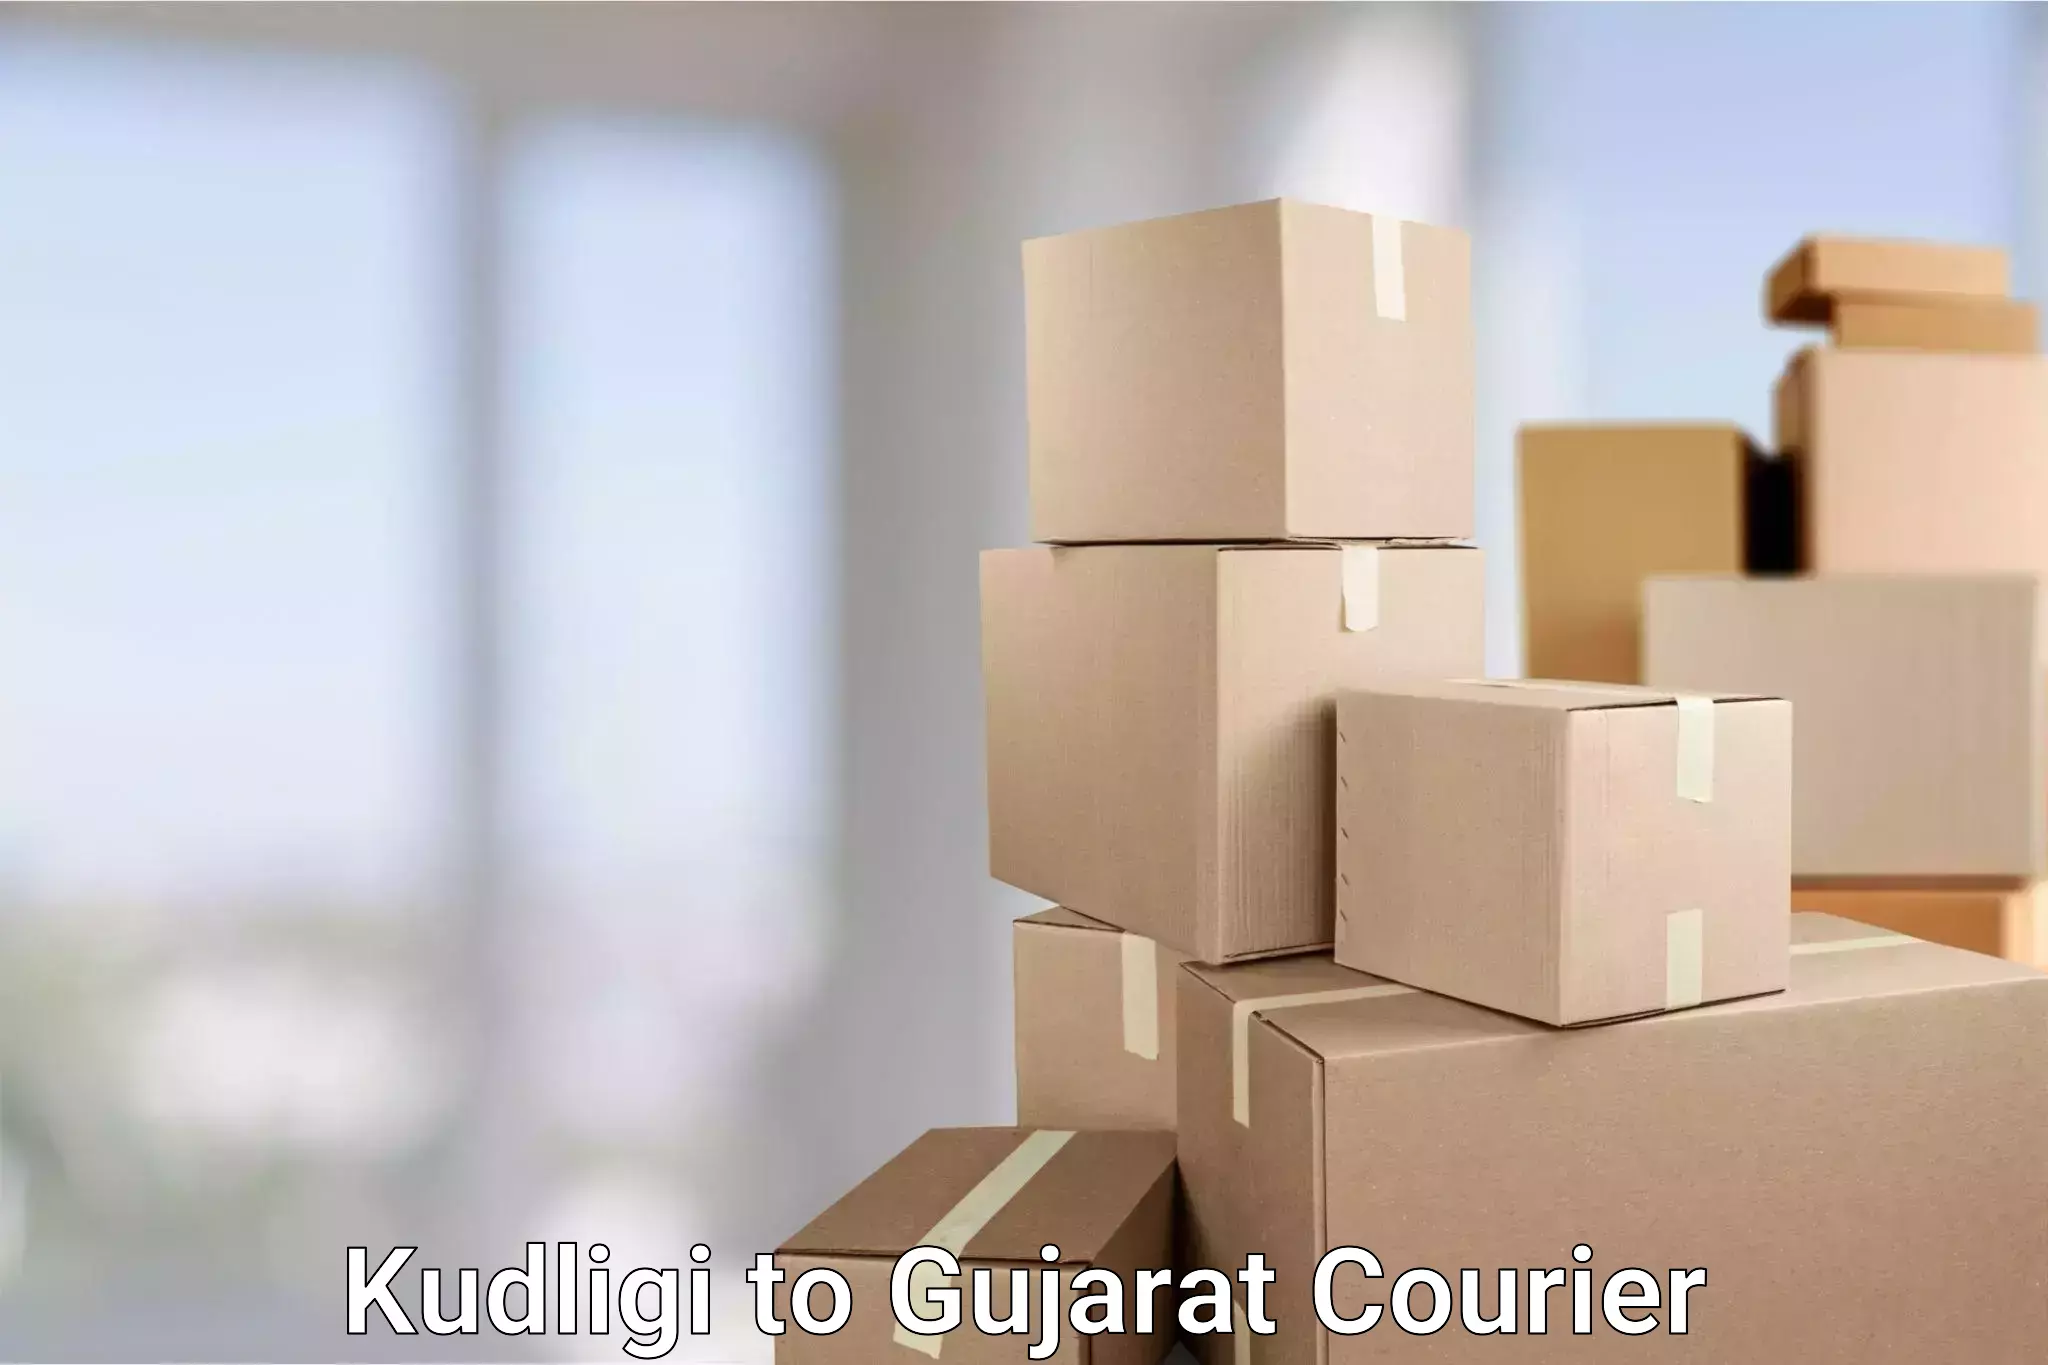 24-hour courier services Kudligi to Savar Kundla